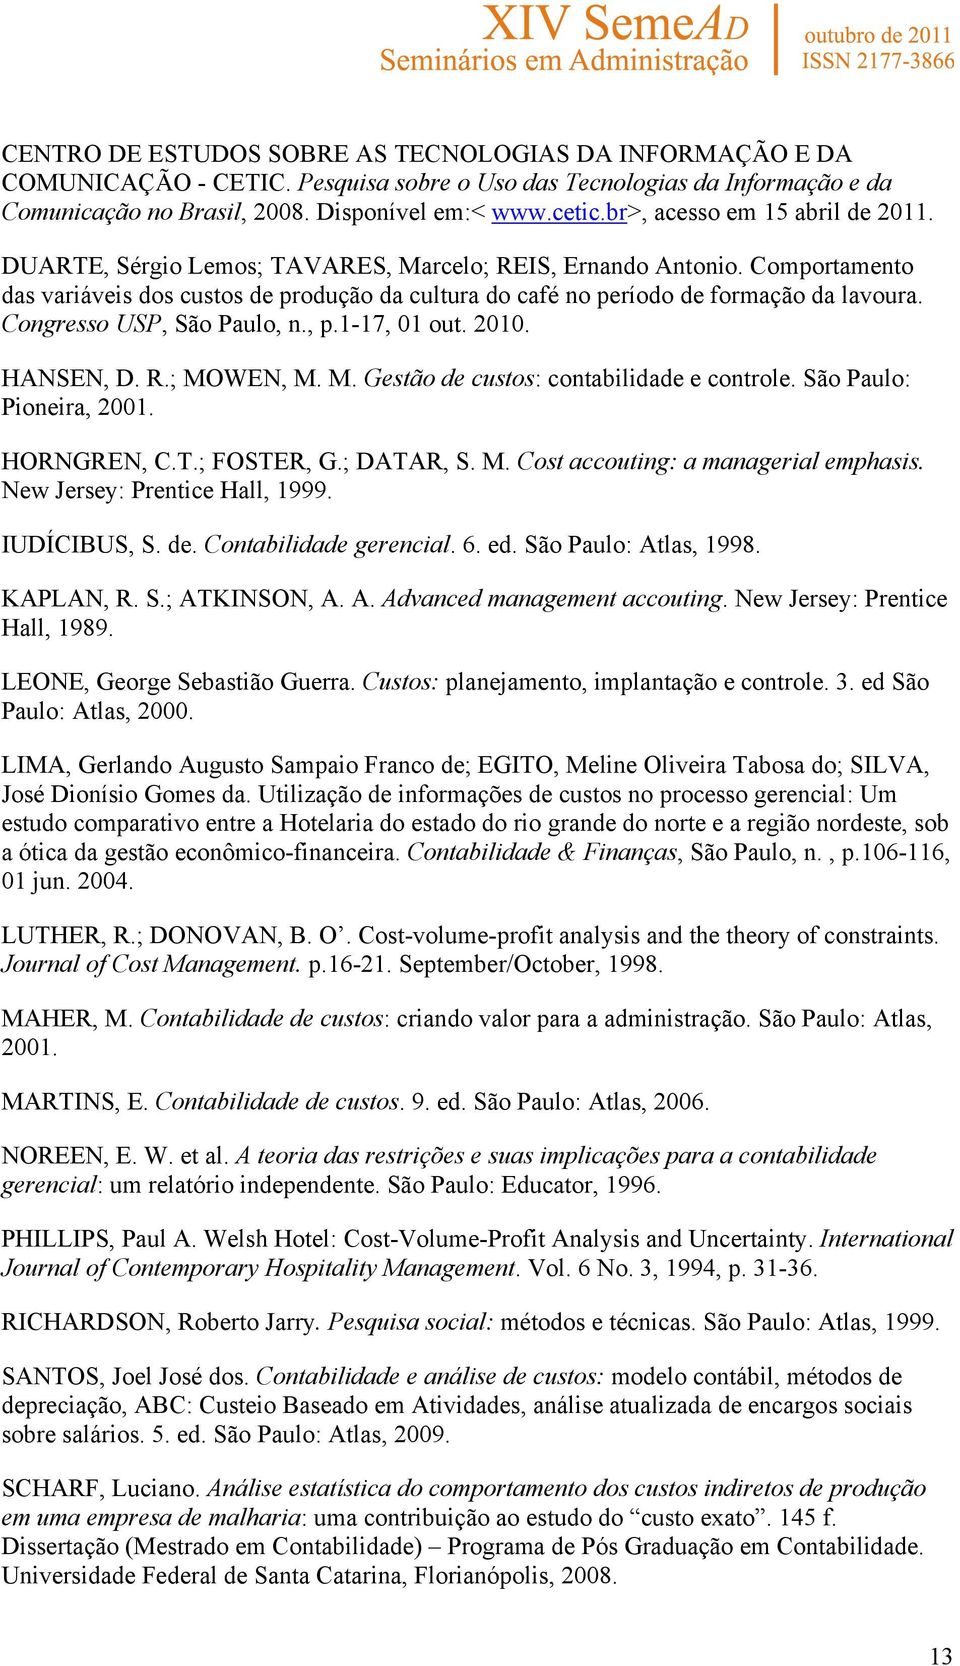 Congresso USP, São Paulo, n., p.1-17, 01 out. 2010. HANSEN, D. R.; MOWEN, M. M. Gestão de custos: contabilidade e controle. São Paulo: Pioneira, 2001. HORNGREN, C.T.; FOSTER, G.; DATAR, S. M. Cost accouting: a managerial emphasis.